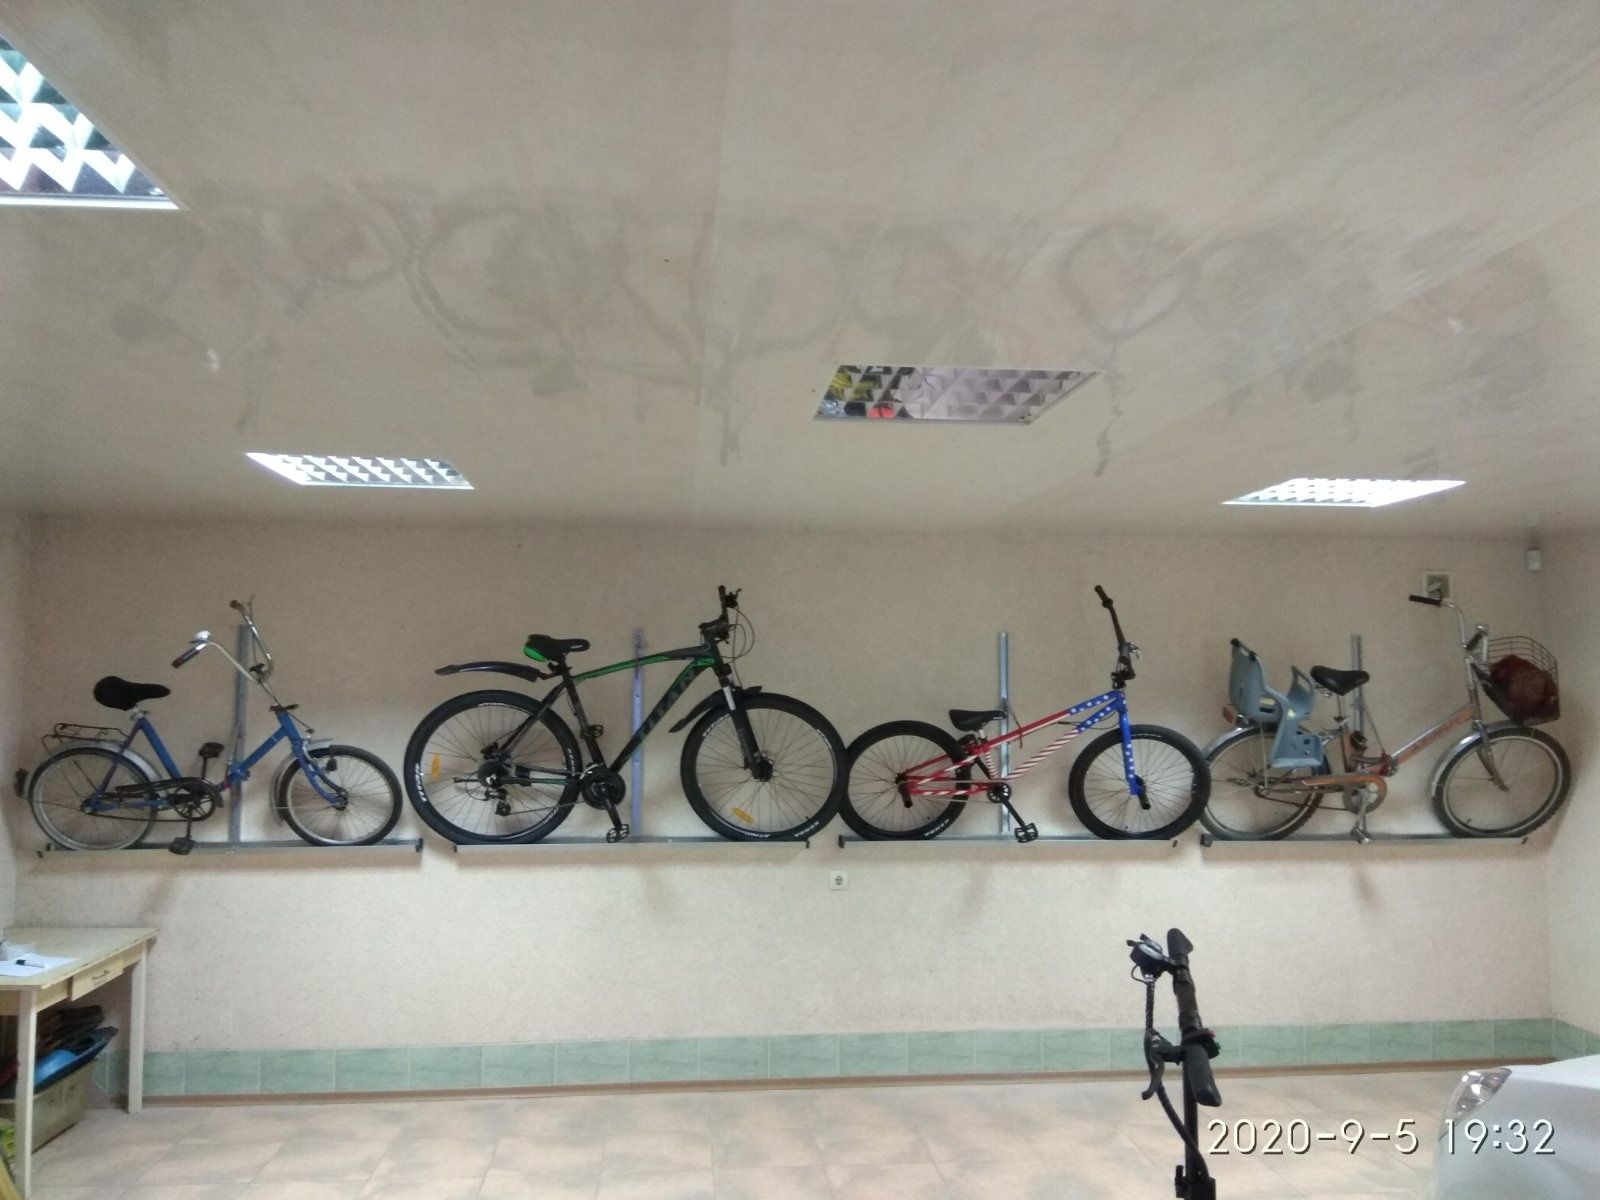 Крепление на  стену для удобного хранения велосипеда, не за педаль